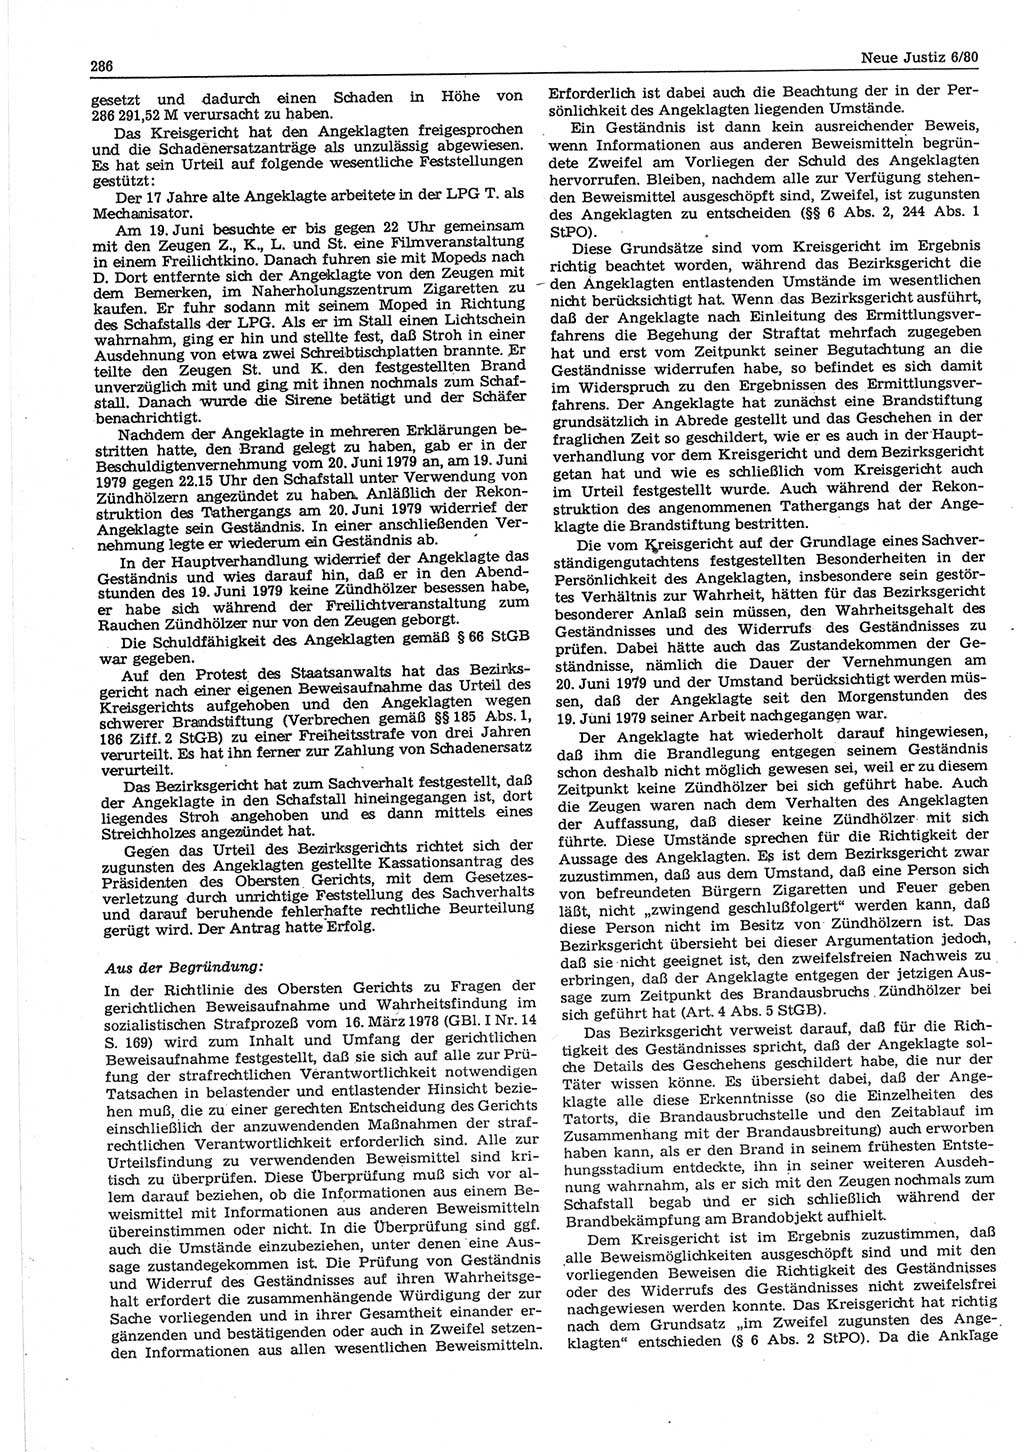 Neue Justiz (NJ), Zeitschrift für sozialistisches Recht und Gesetzlichkeit [Deutsche Demokratische Republik (DDR)], 34. Jahrgang 1980, Seite 286 (NJ DDR 1980, S. 286)